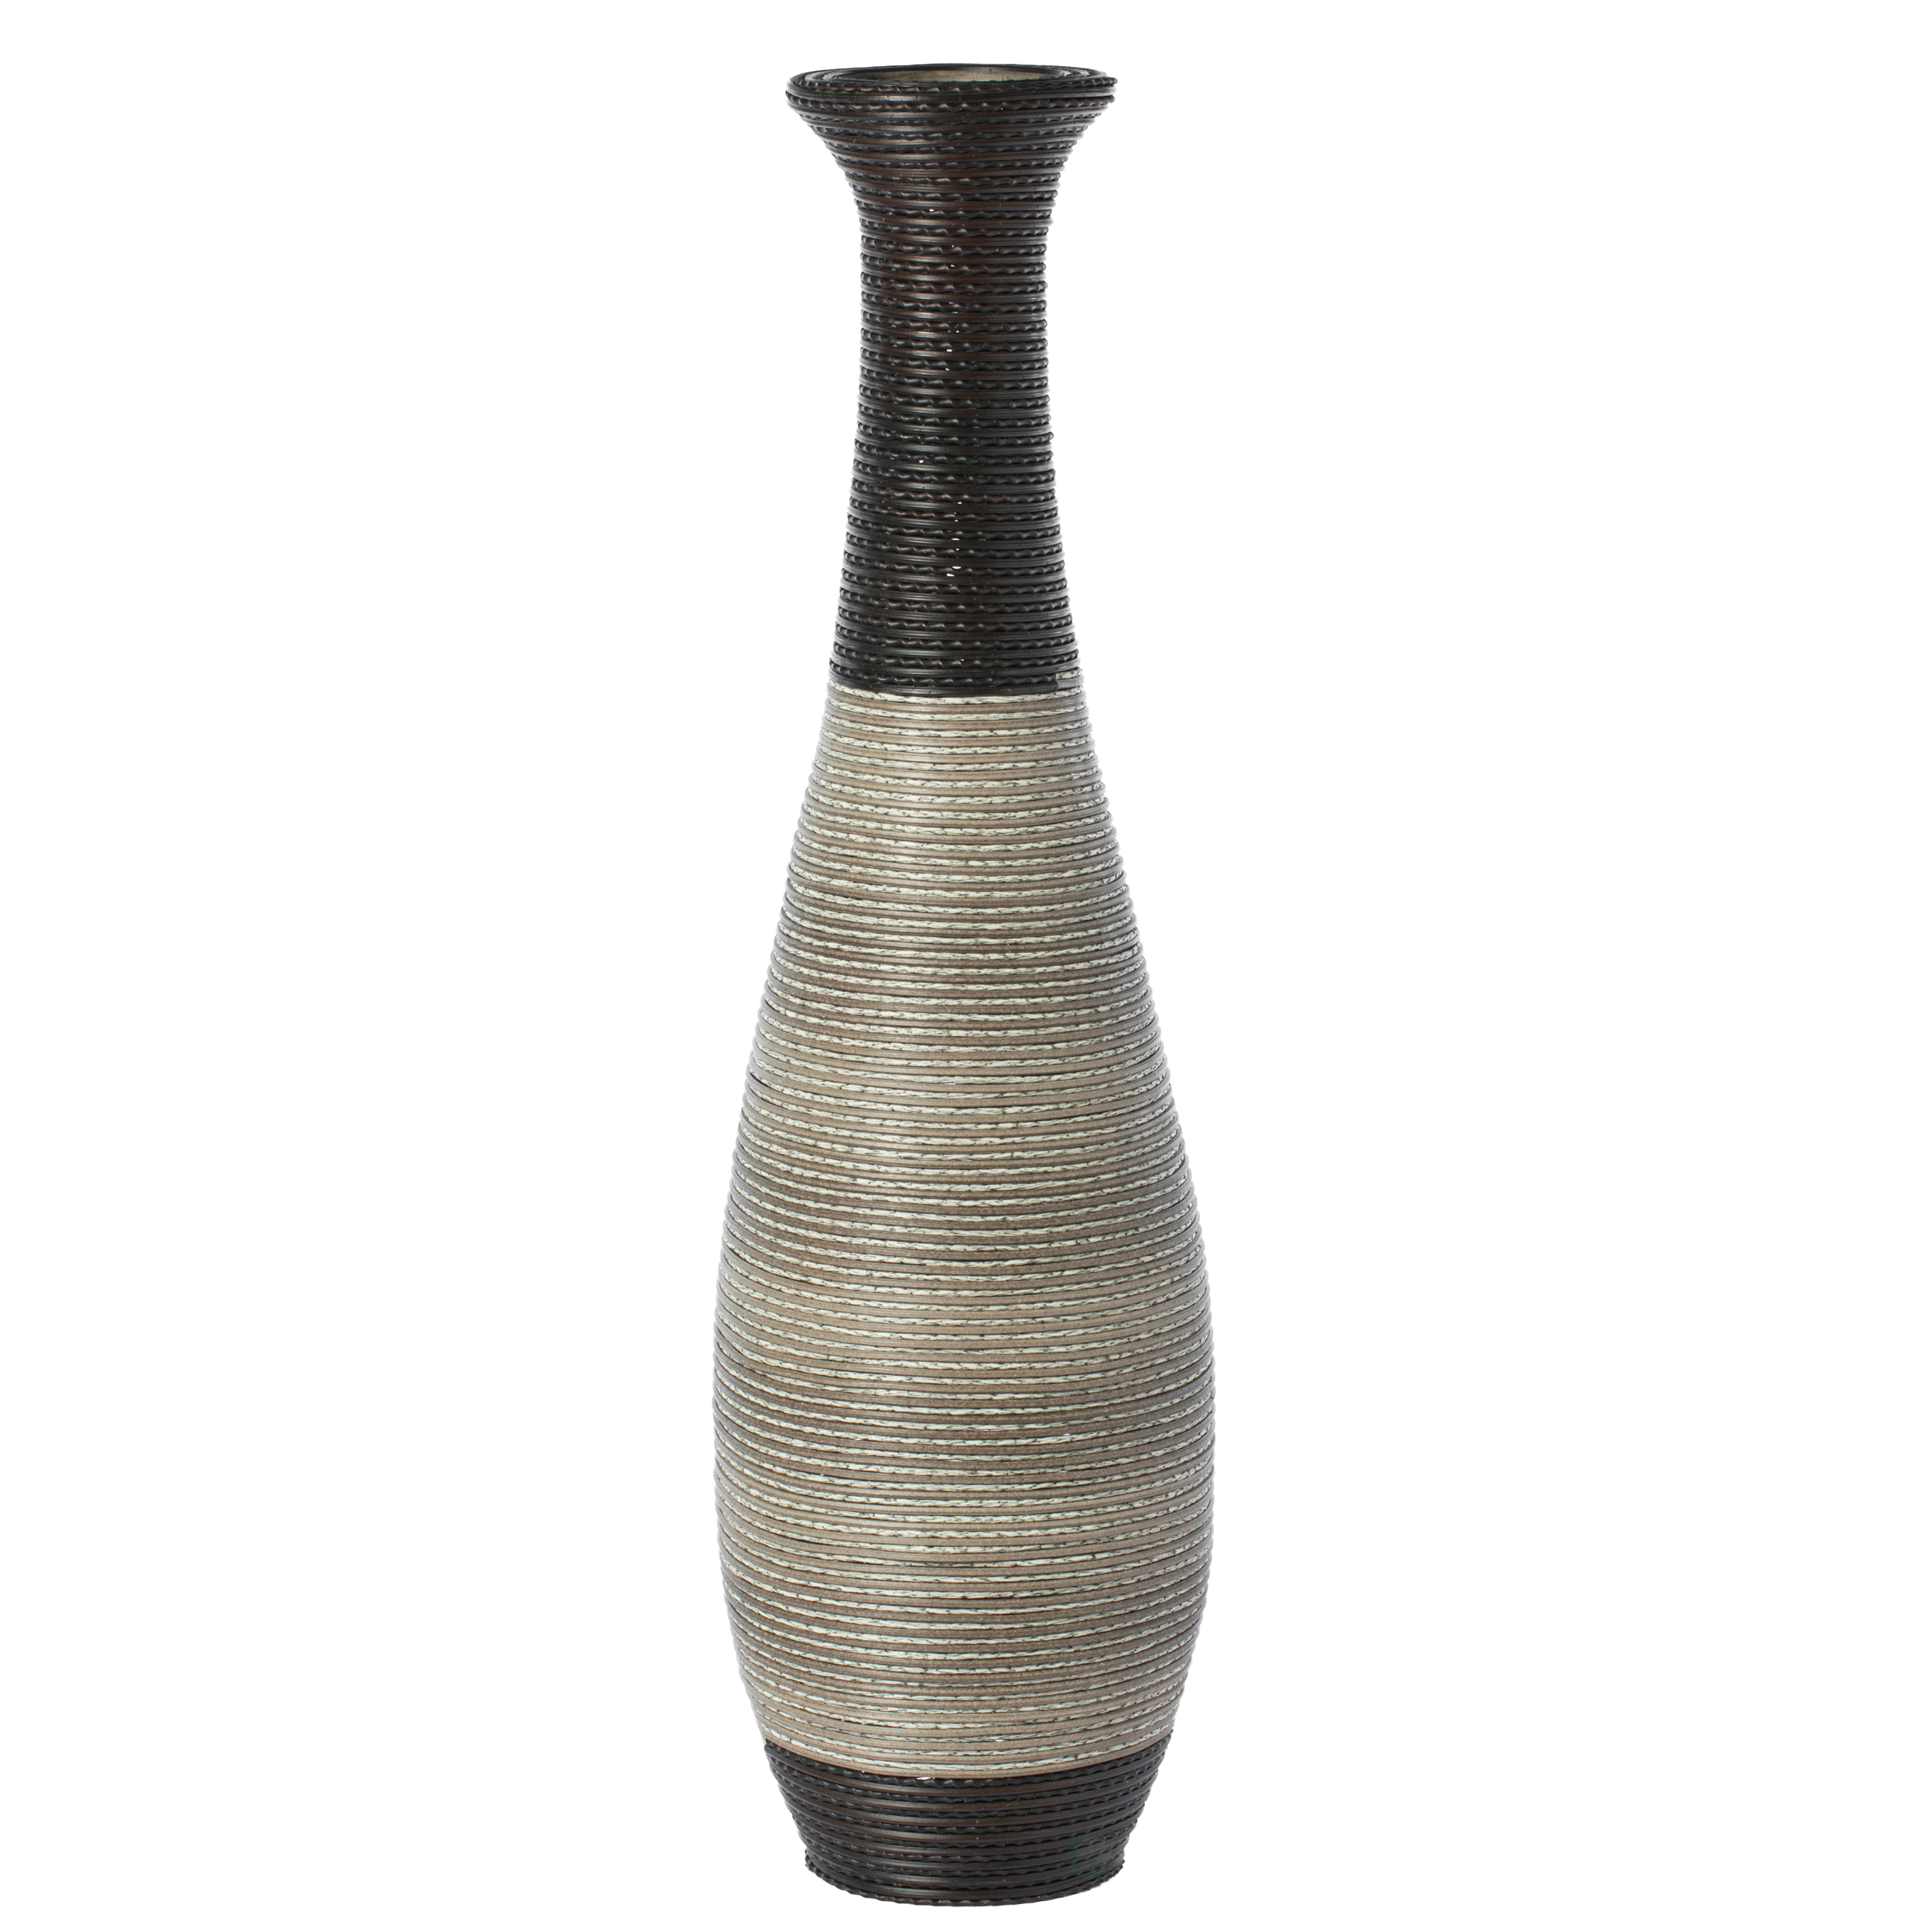 Tall Floor Vase, Large Vase For Home Decor Floor, Beige Floor Vase, Artificial Rattan Wire Pattern Vase, Large PVC Floor Vase, 40-Inch-Tall